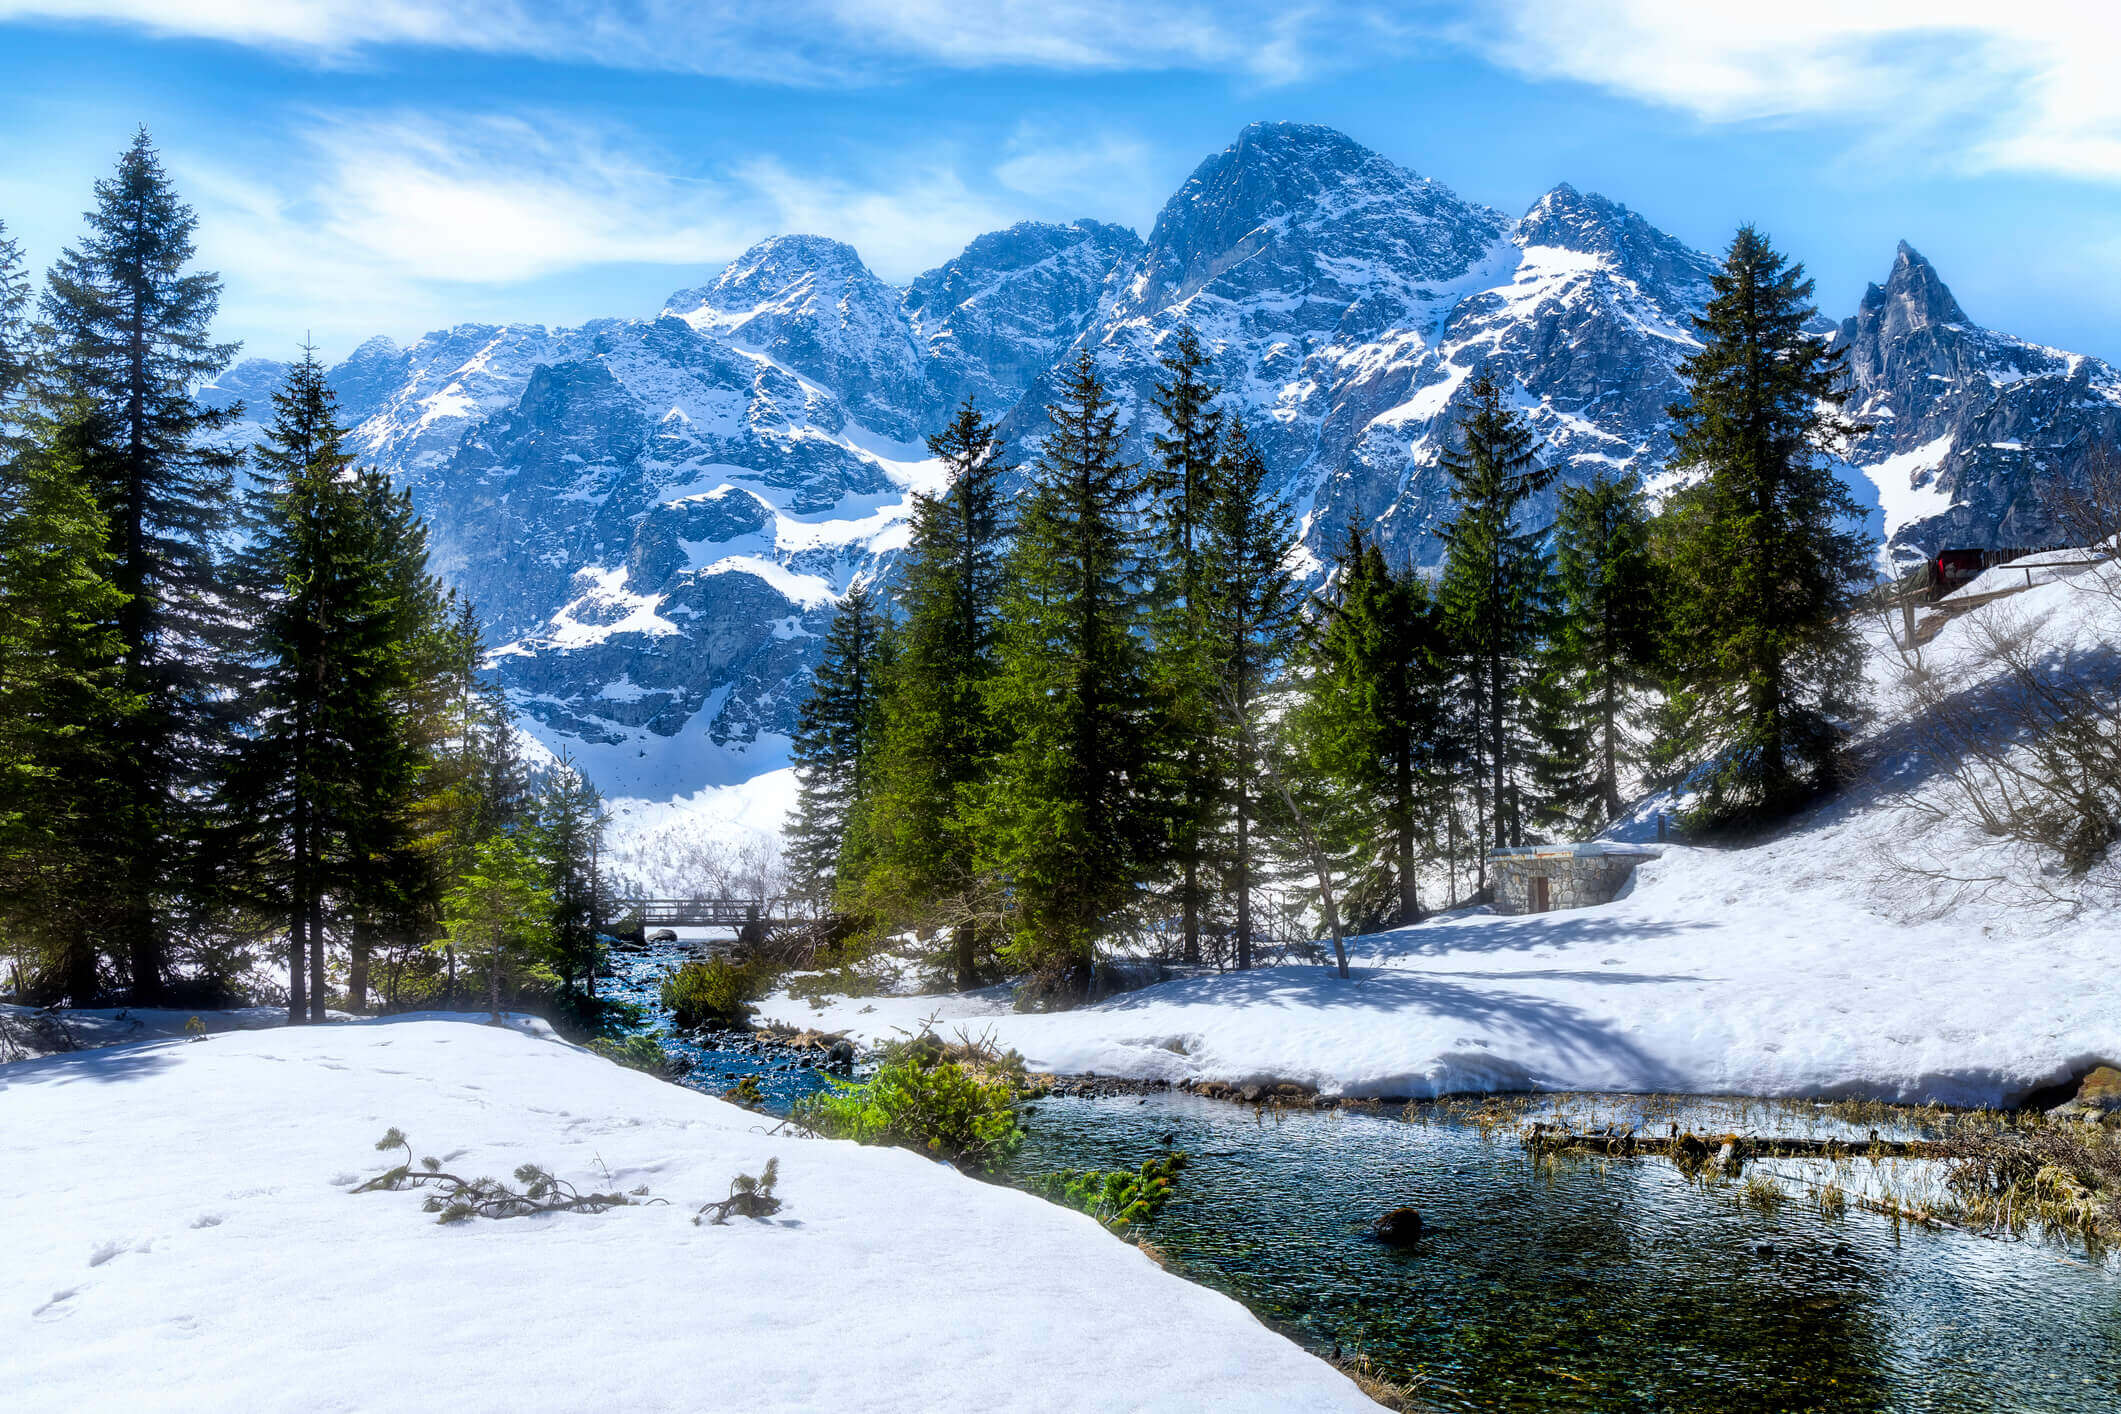 Wypoczynek zimowy w Tatrach. Co robić opróćz jazdy na nartach?